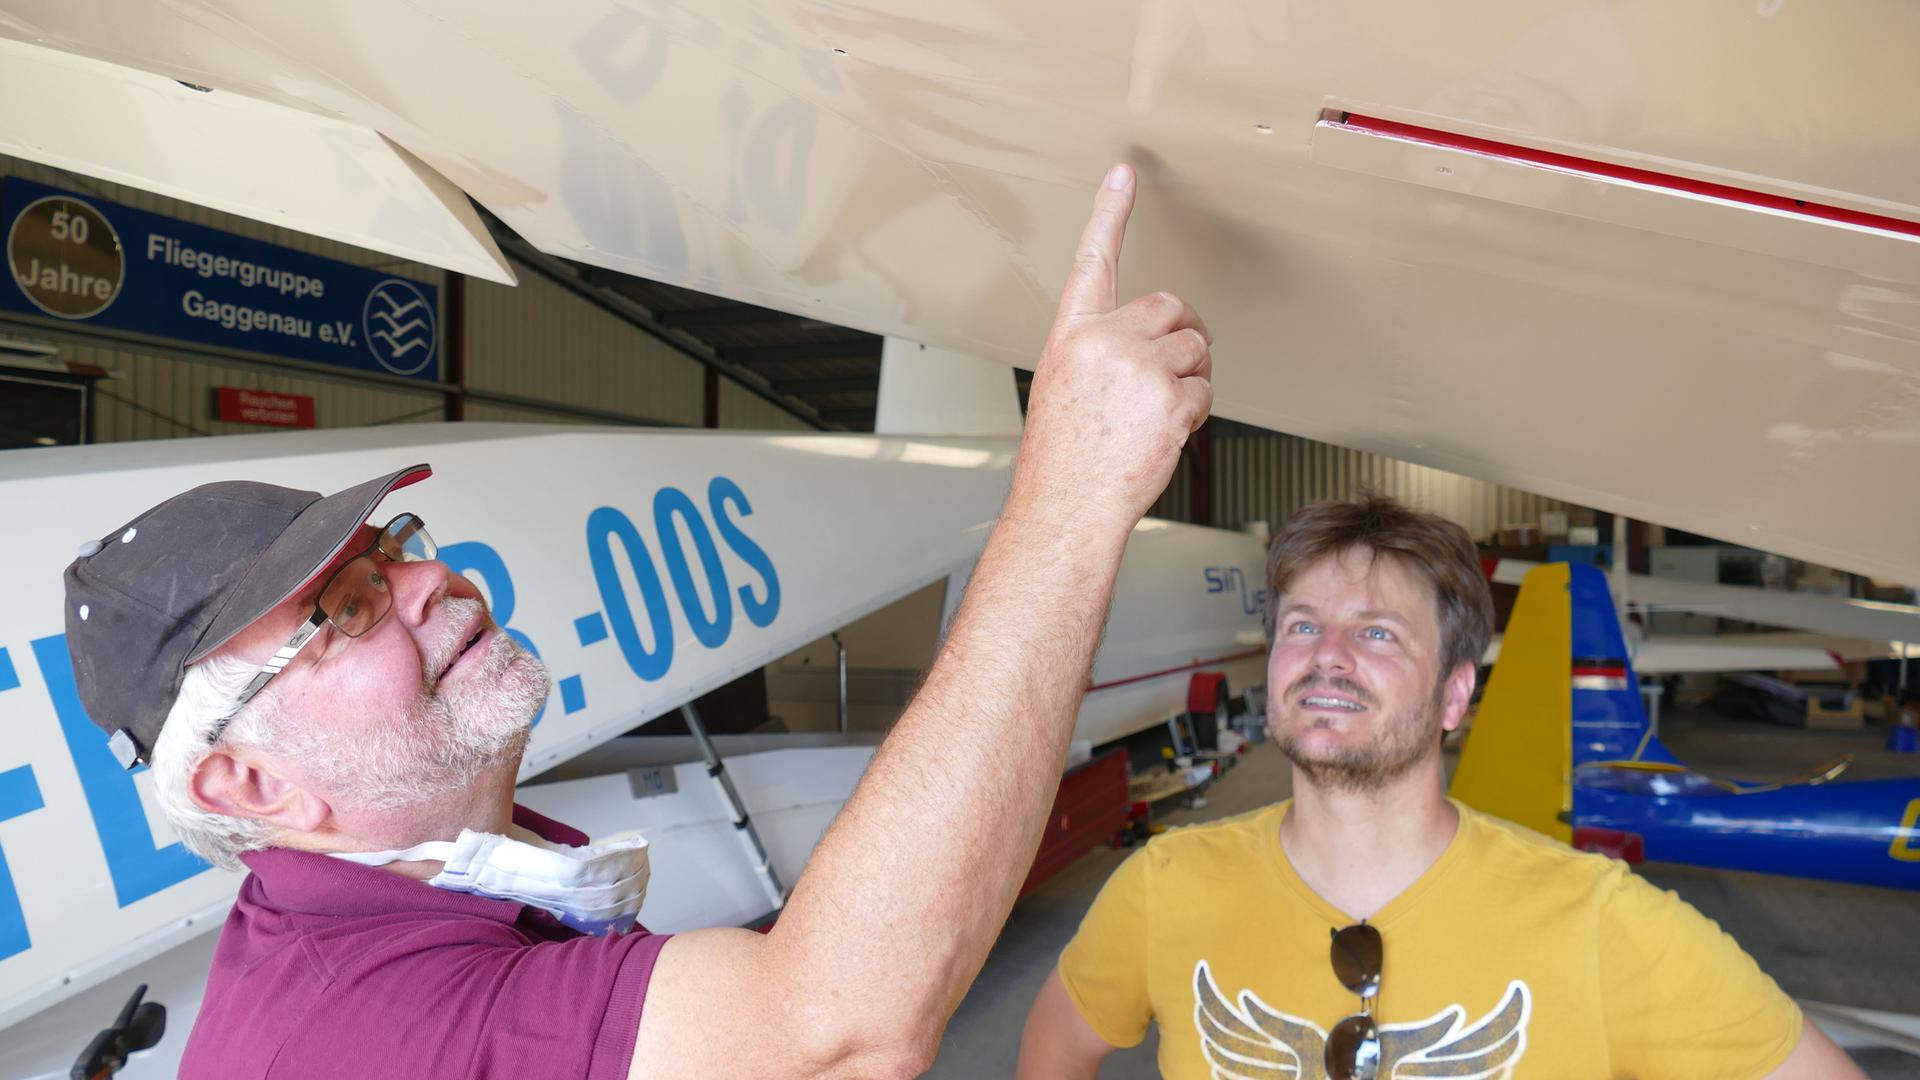 Vater Bernd Hurrle und Sohn Alexander Hurrle (von links) begutachten einen Segelflieger. Fliegergruppe Gaggenau. 